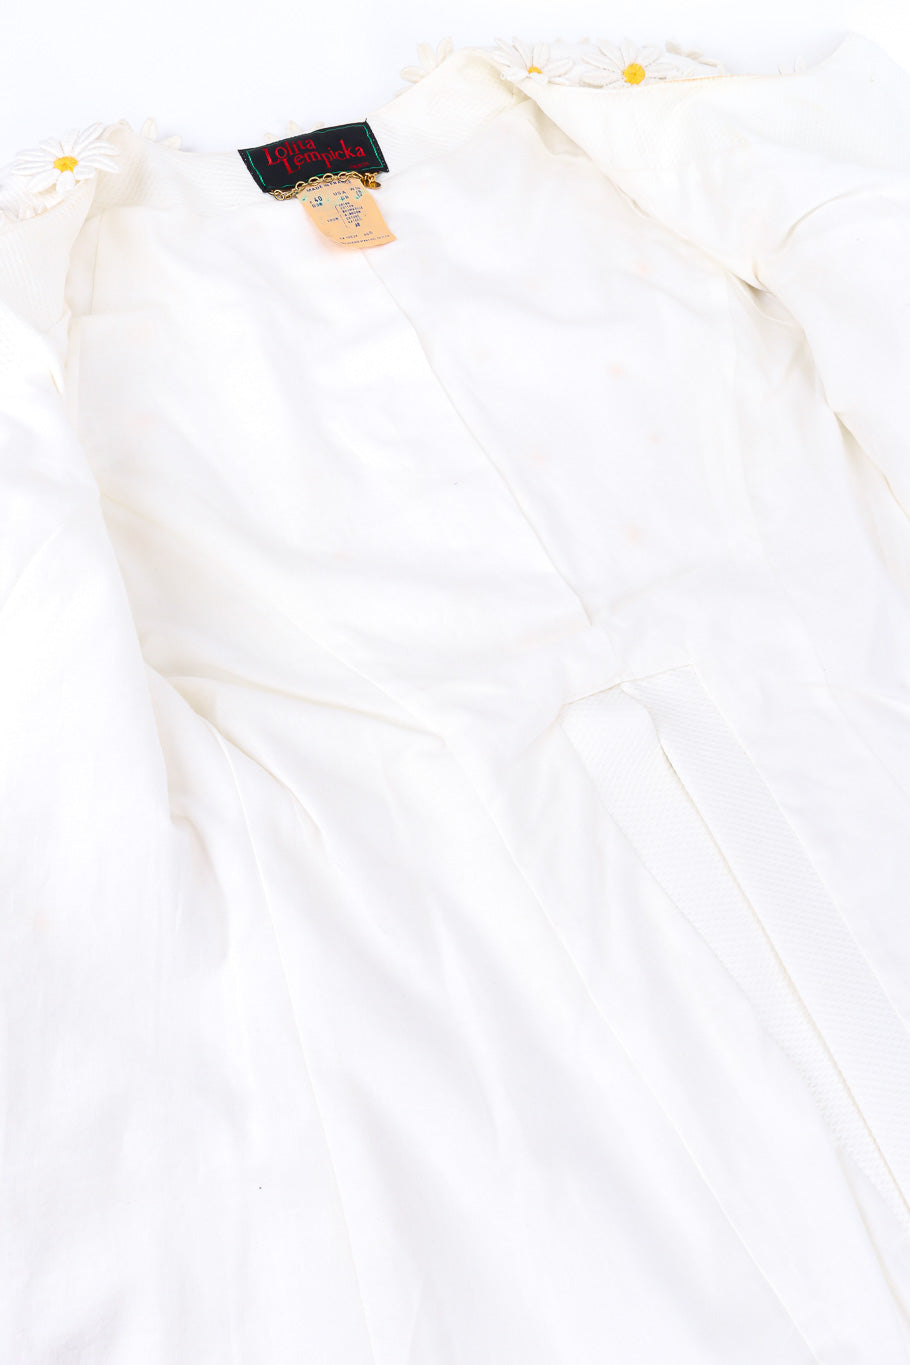 Daisy appliqué jacket by Lolita Lempicka lining @recessla